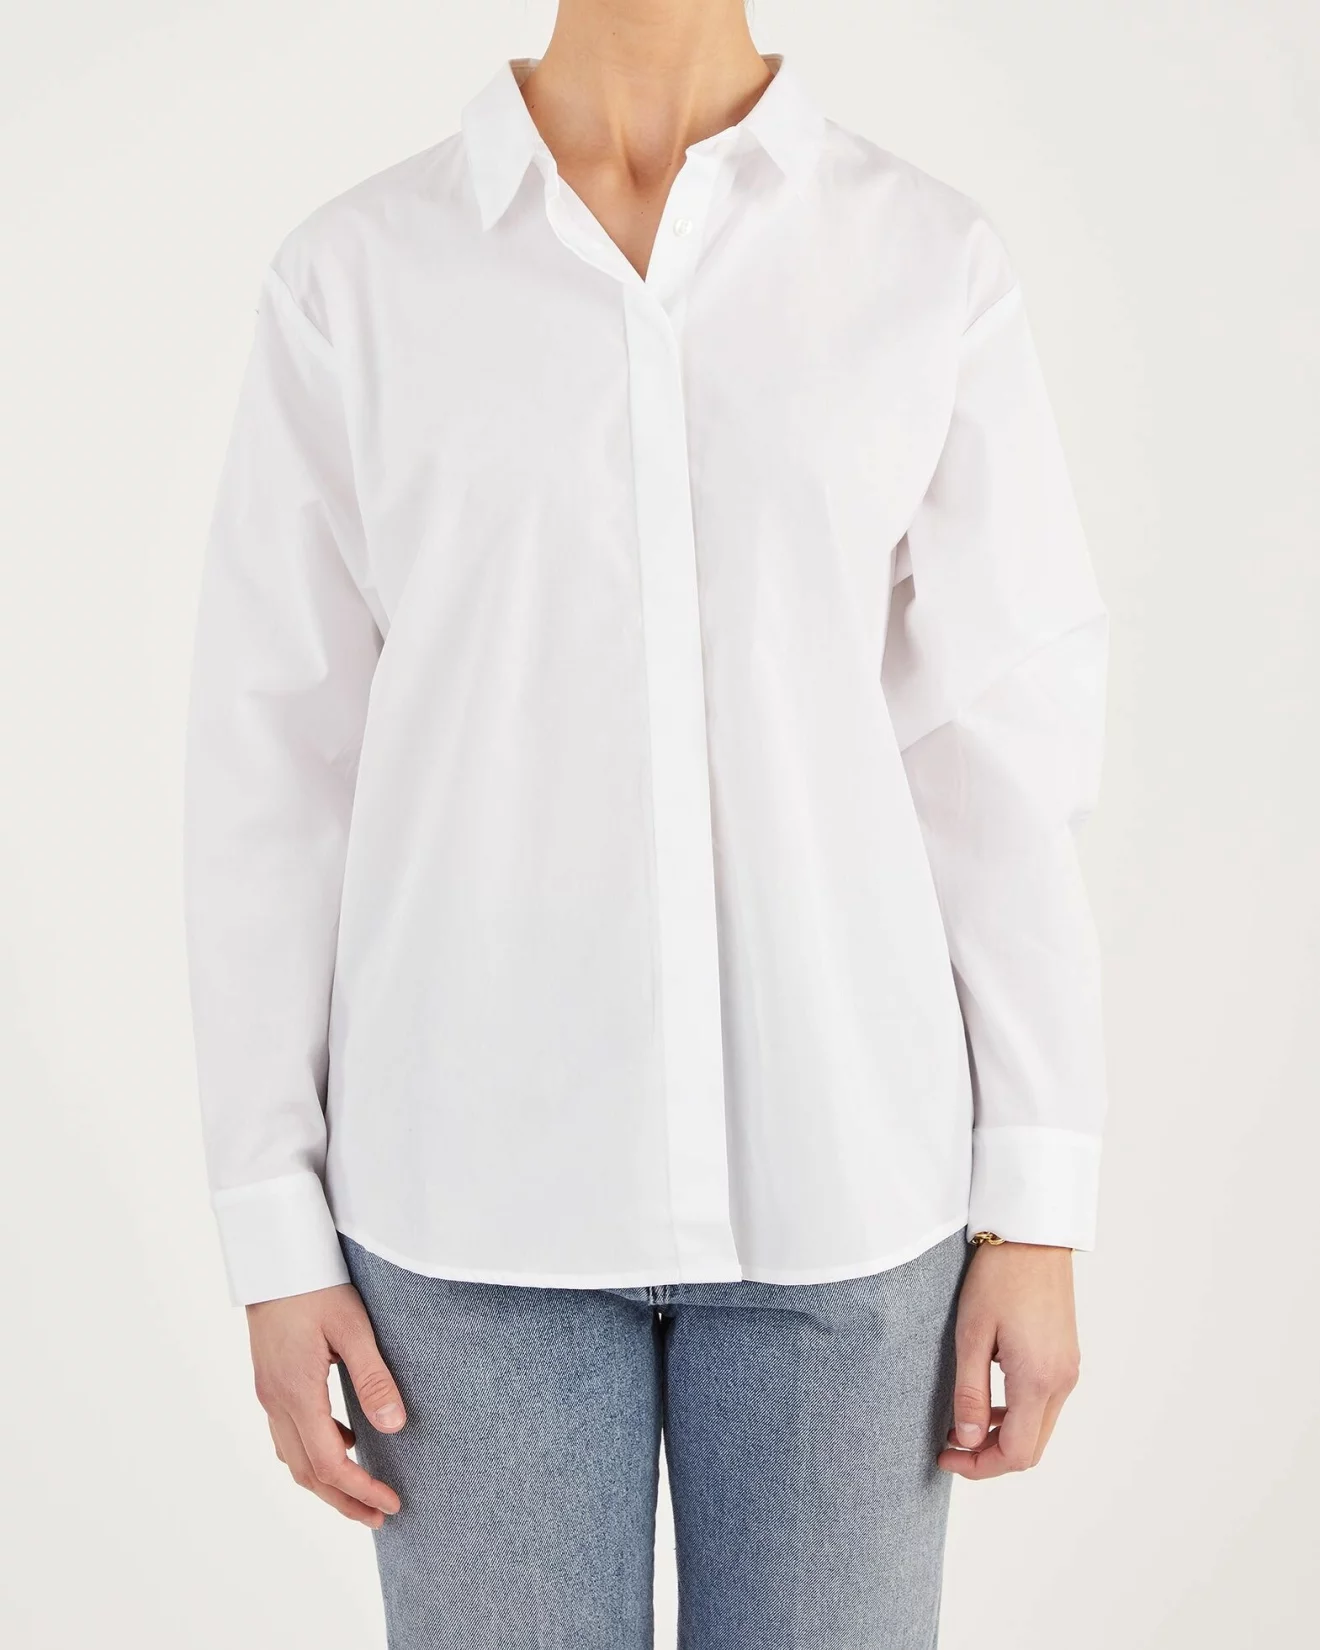 skjorta i vit nyans med boxig passform och dold knäppning från Stylein